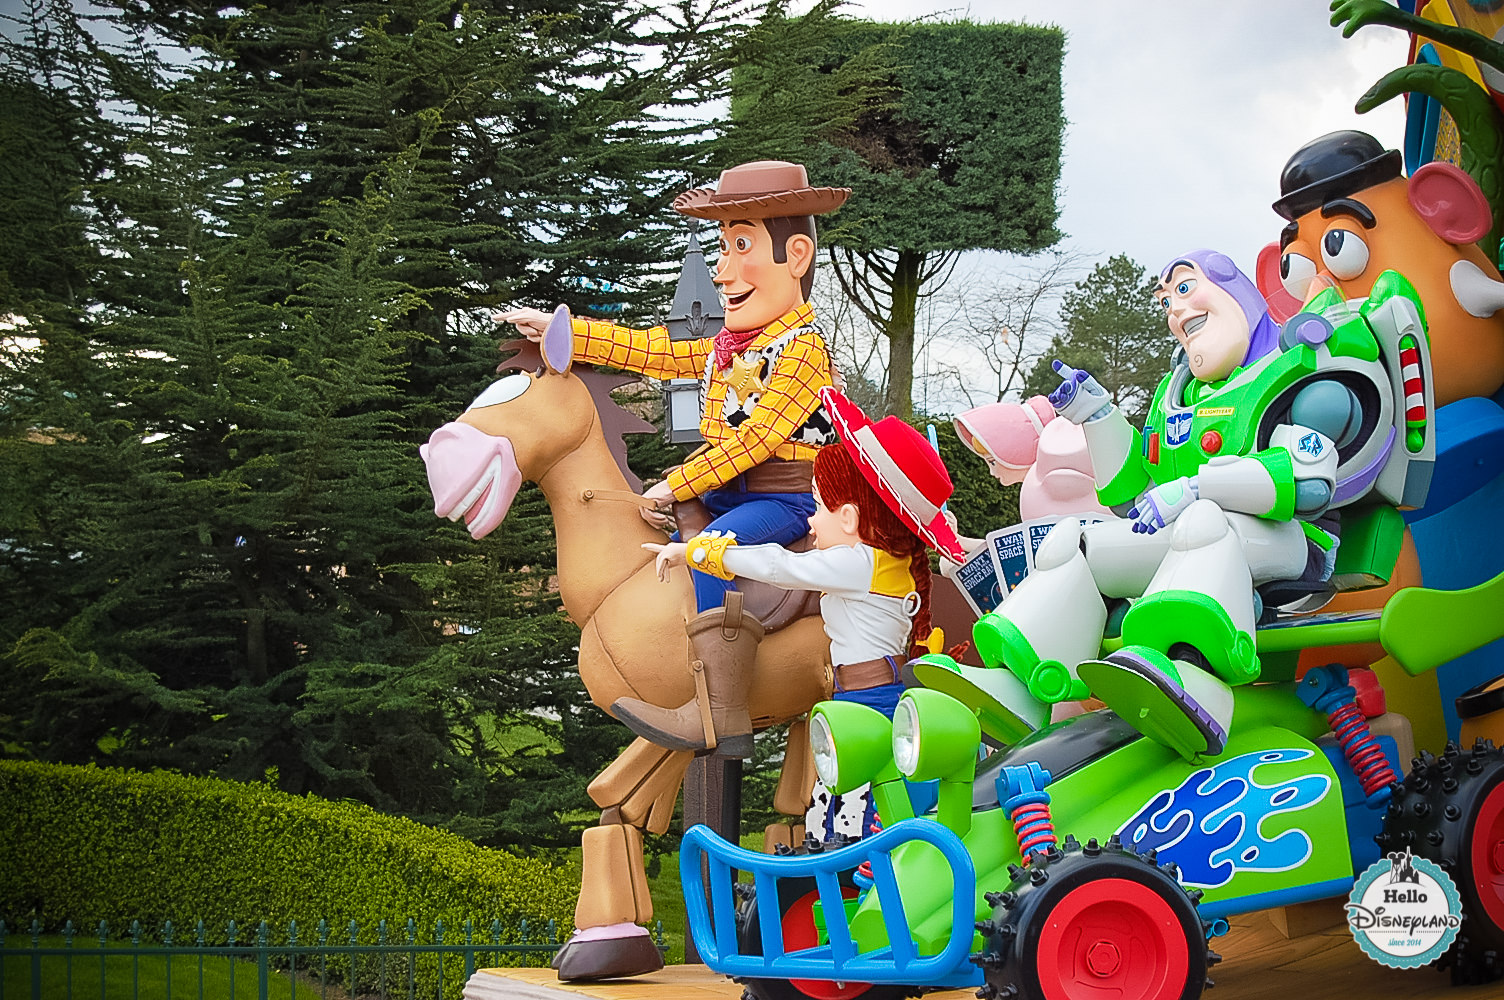 Disney Once Upon a Dream Parade - Disneyland Paris -7